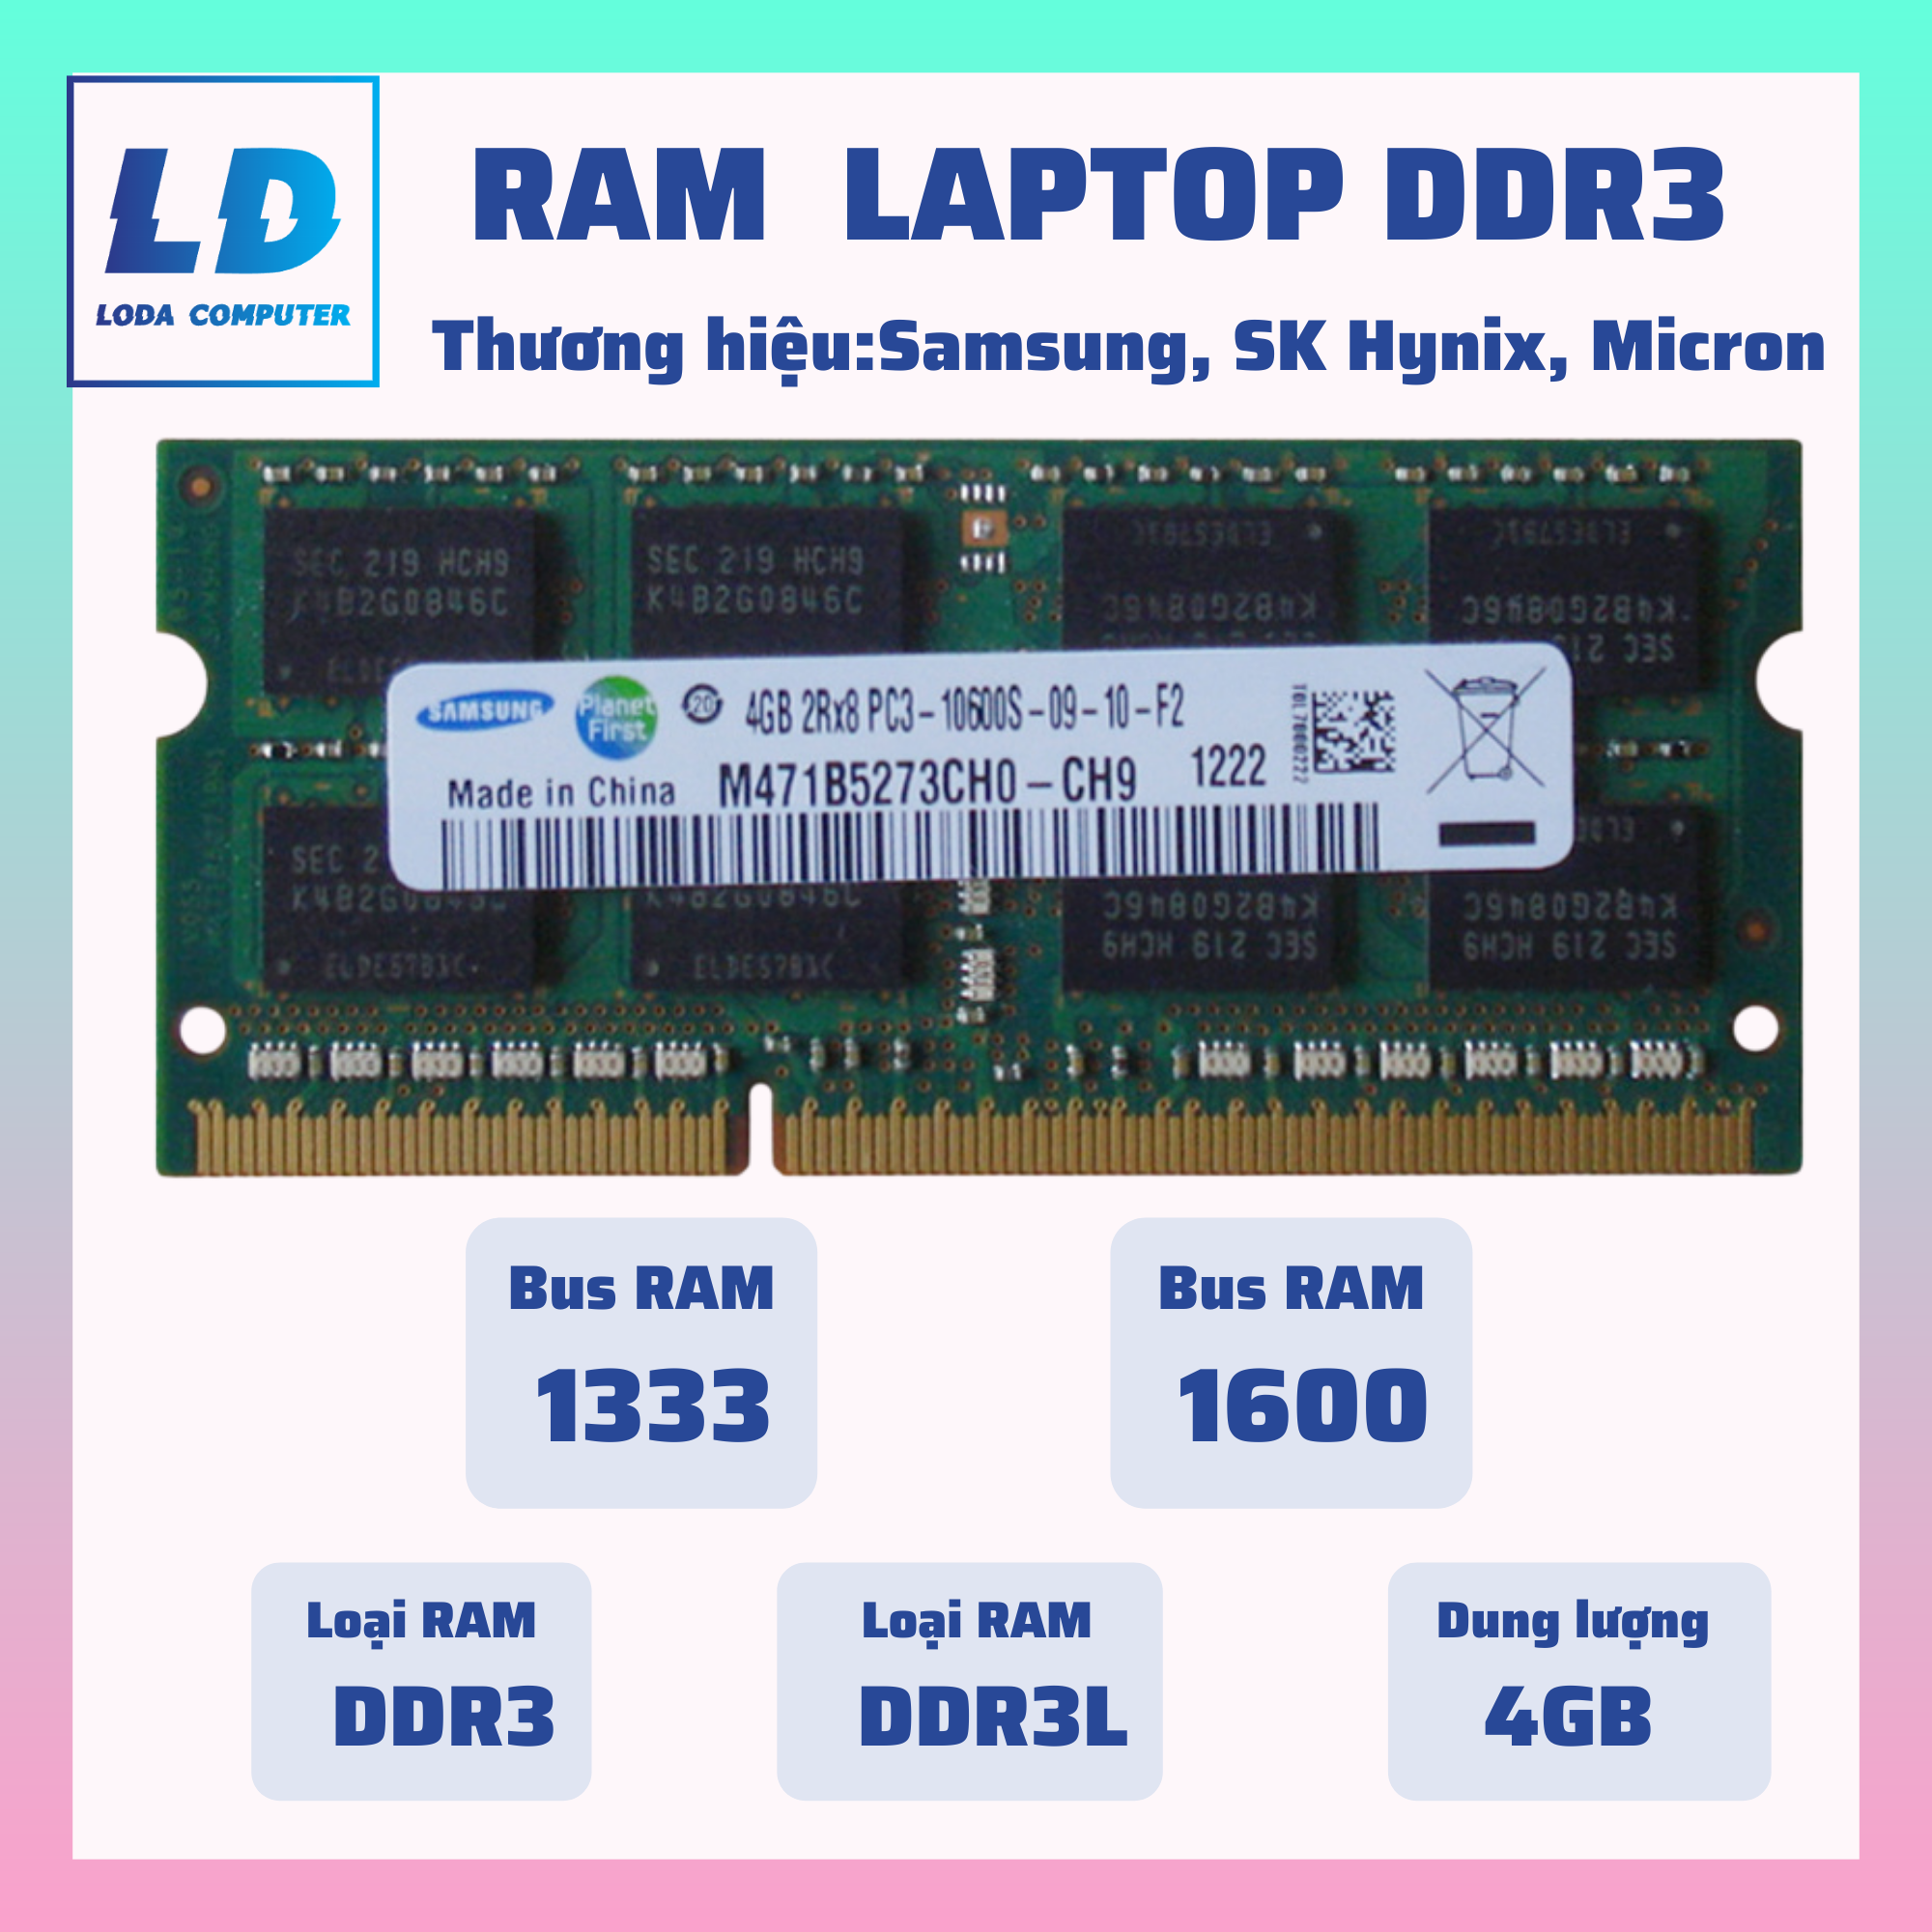 Ram Laptop 4GB DDR3 DDR3L Bus 1333, 1600 (Hiệu Samsung/SK Hynix, Micon,…)